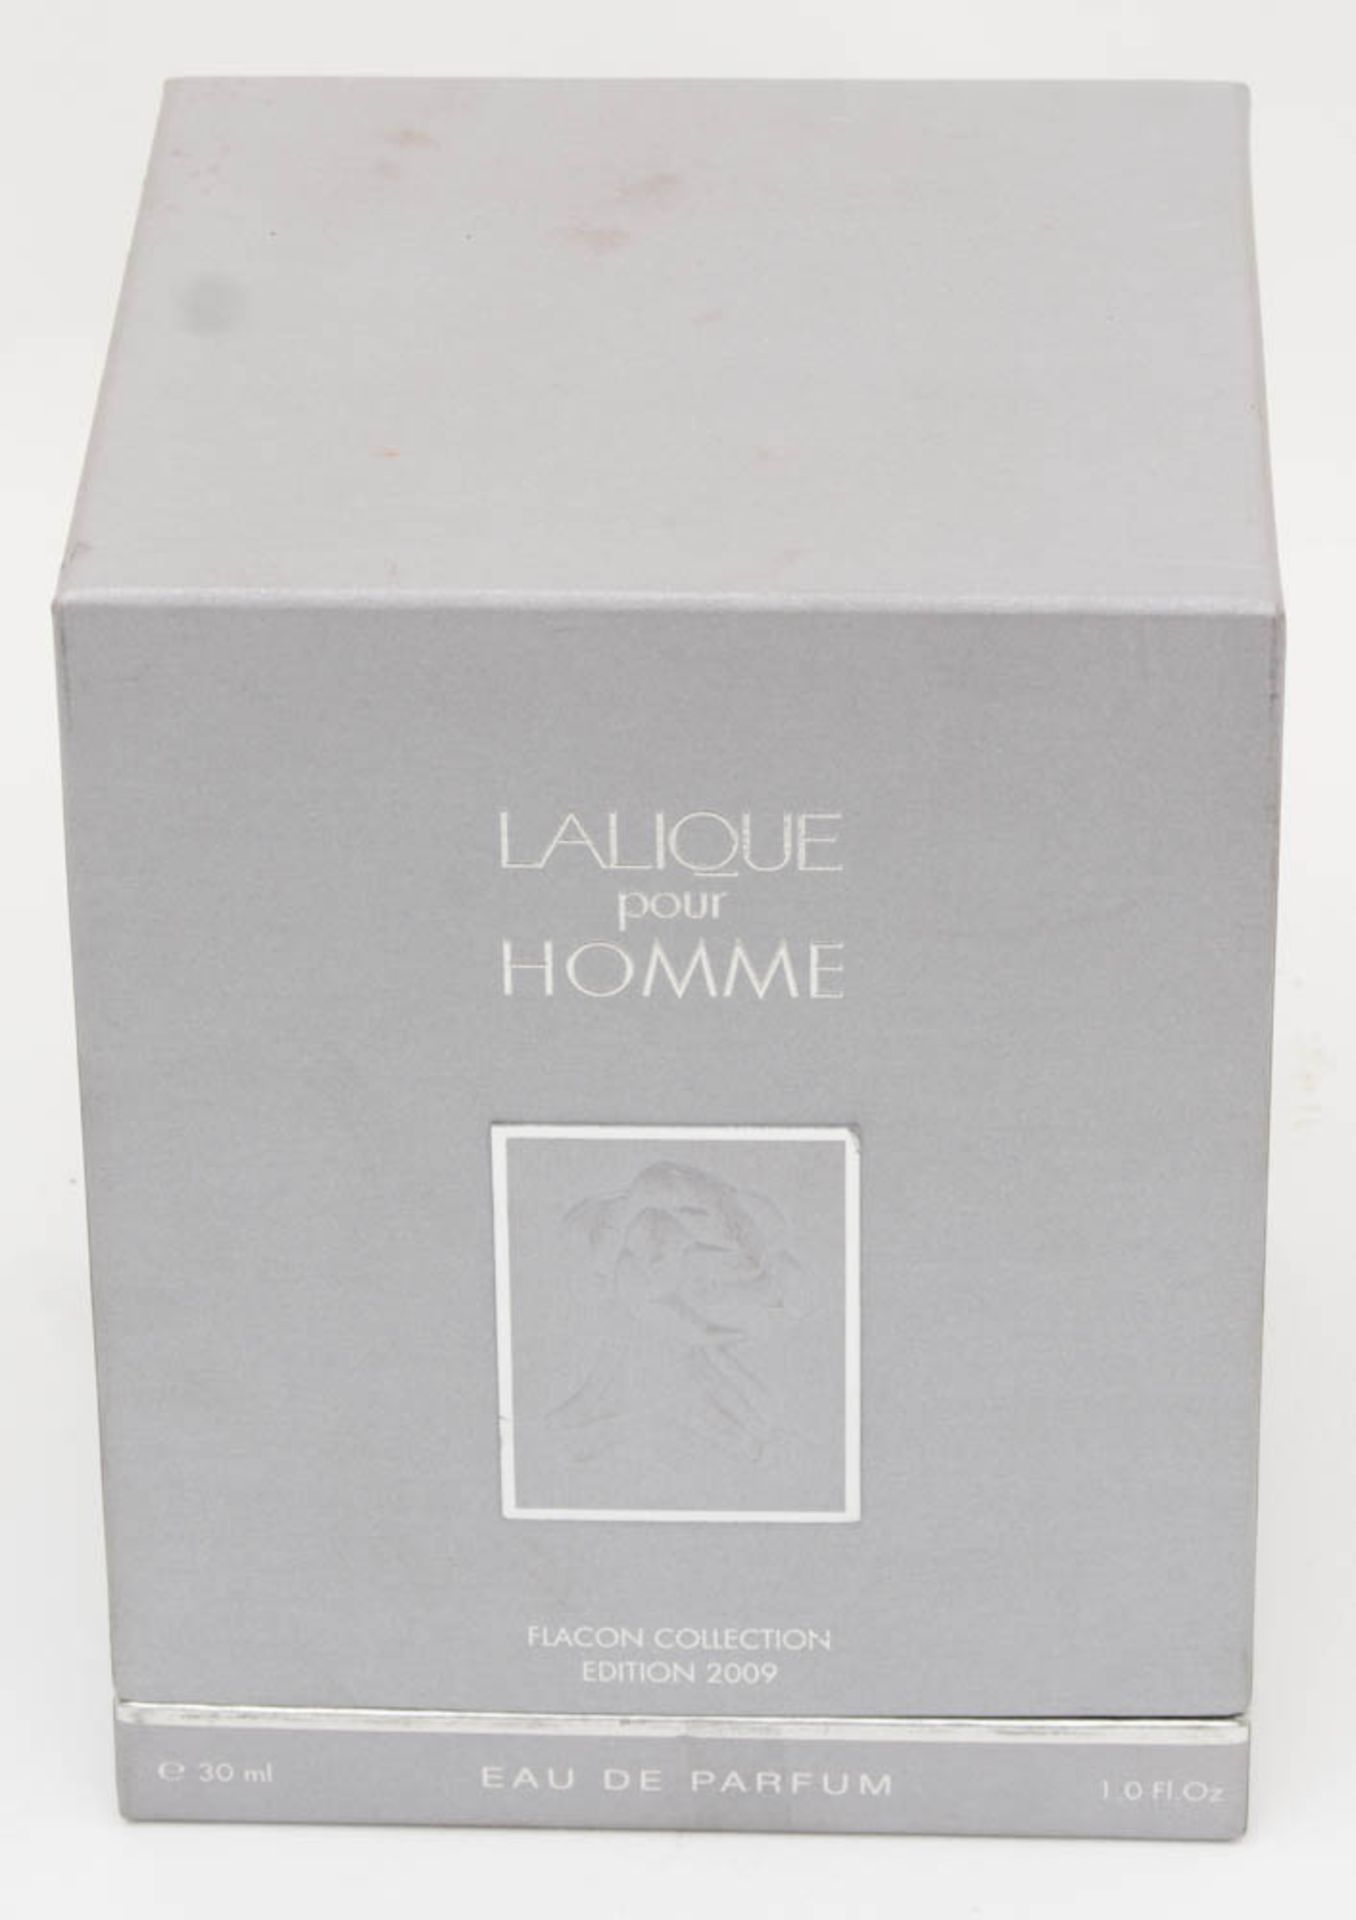 Lalique pour Homme Cristal - Athletes Edition Limitée 2009.Flacon collection.Limited collection im - Bild 2 aus 4